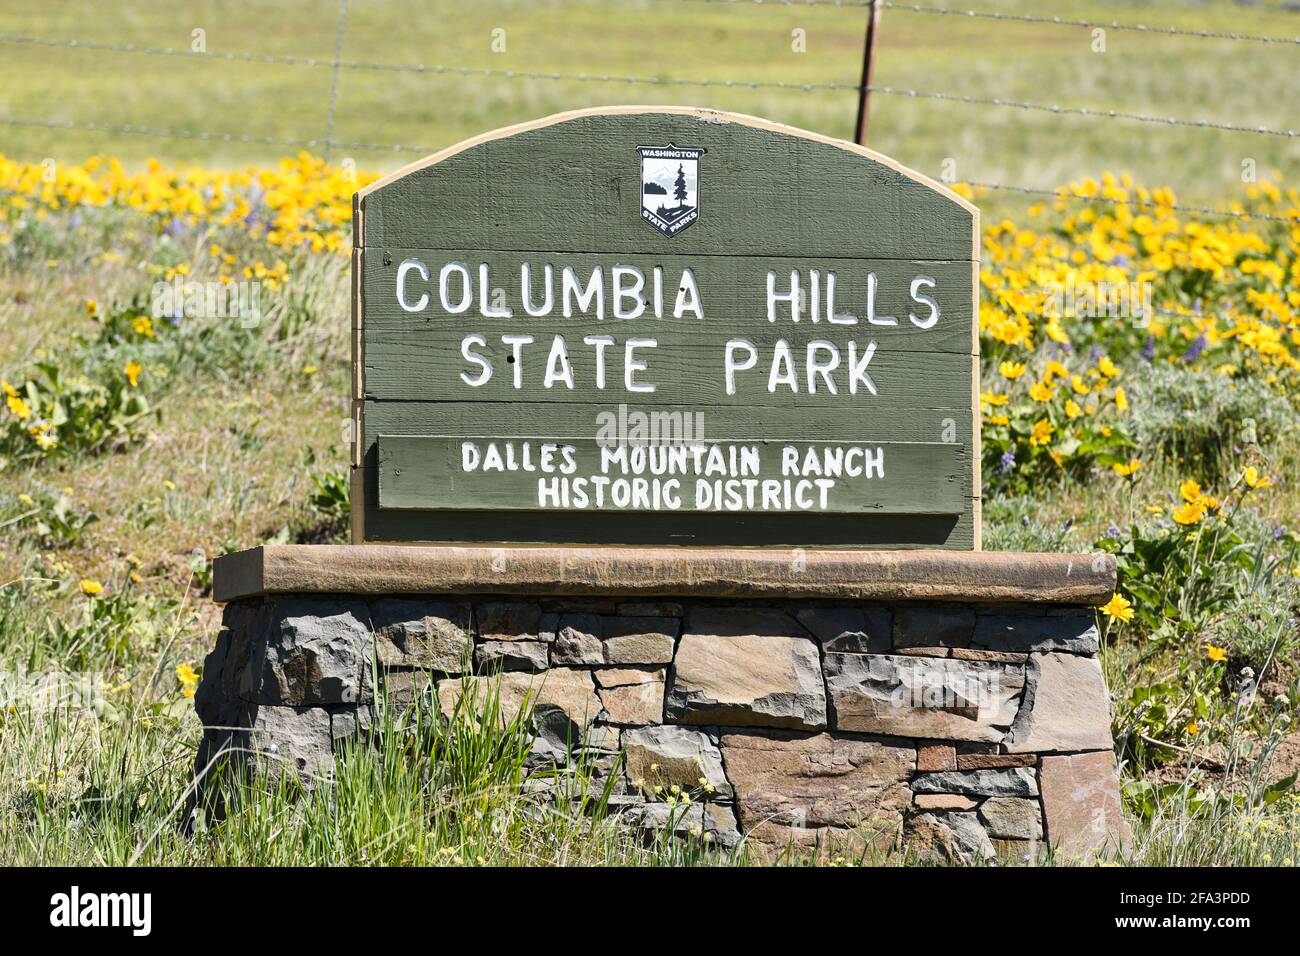 Holzschild auf Steinsockel für den Columbia Hills State Park, den historischen Distriktabschnitt der Dalles Mountain Ranch. Dies ist ein Washington State Park Stockfoto